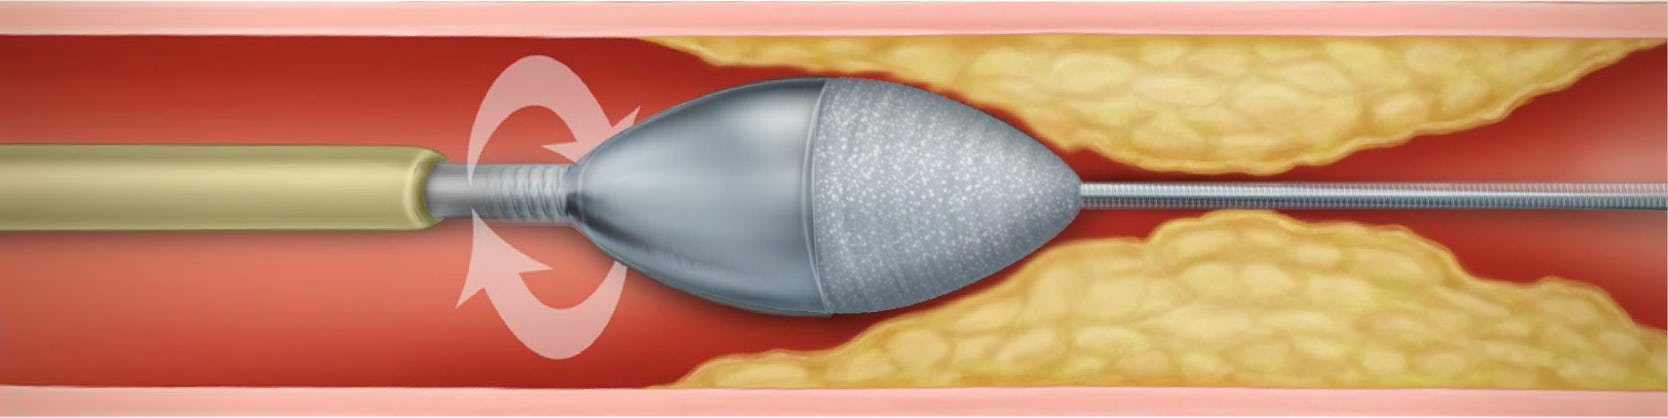 Rotablație coronariană - Tratament angină pectorală (artere calcifiate)